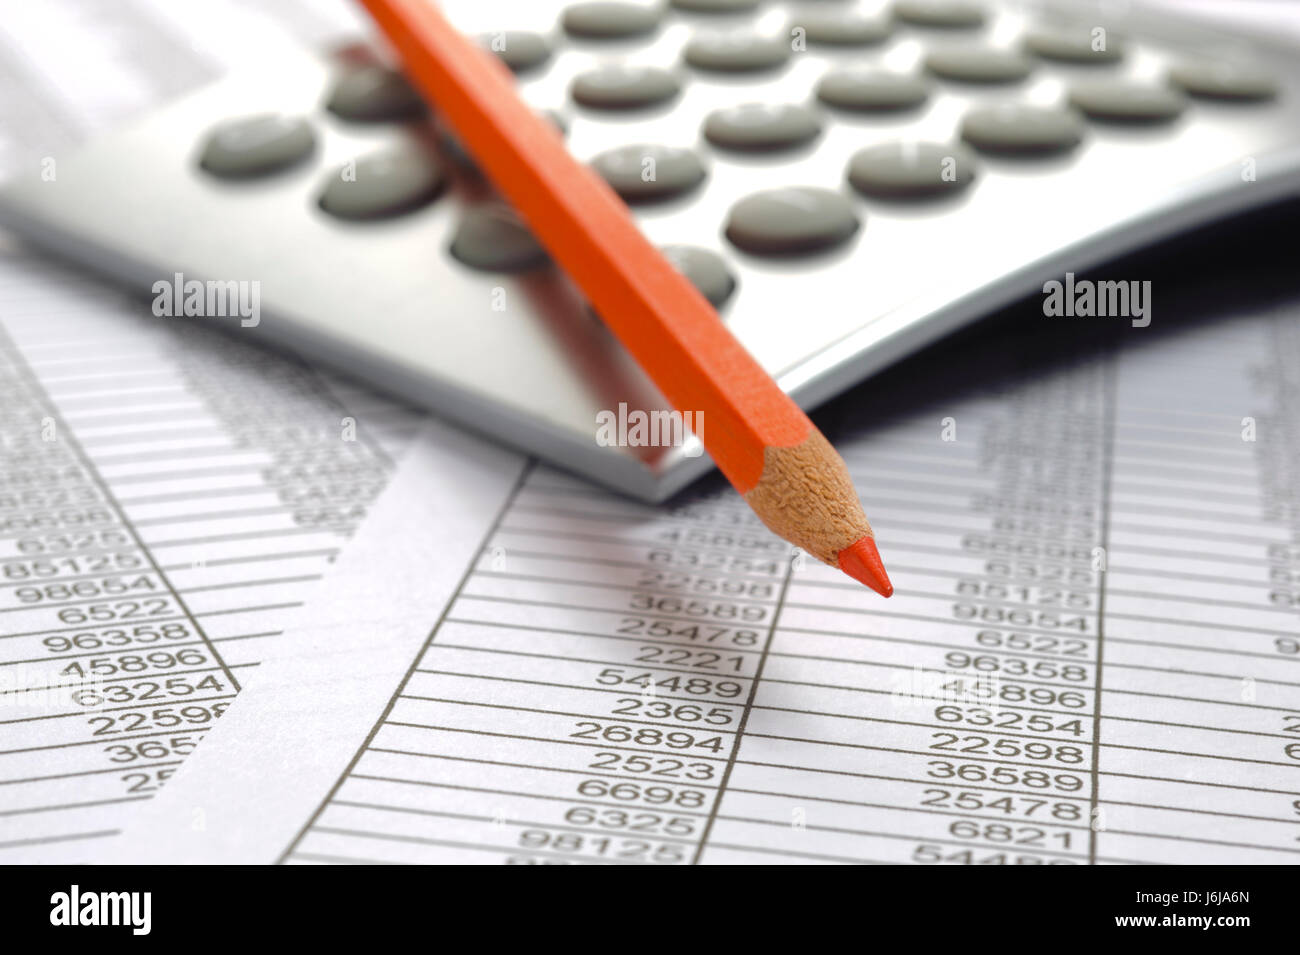 Contabilità finanziaria con foglio di tavola, matita rossa e calcolatrice Foto Stock